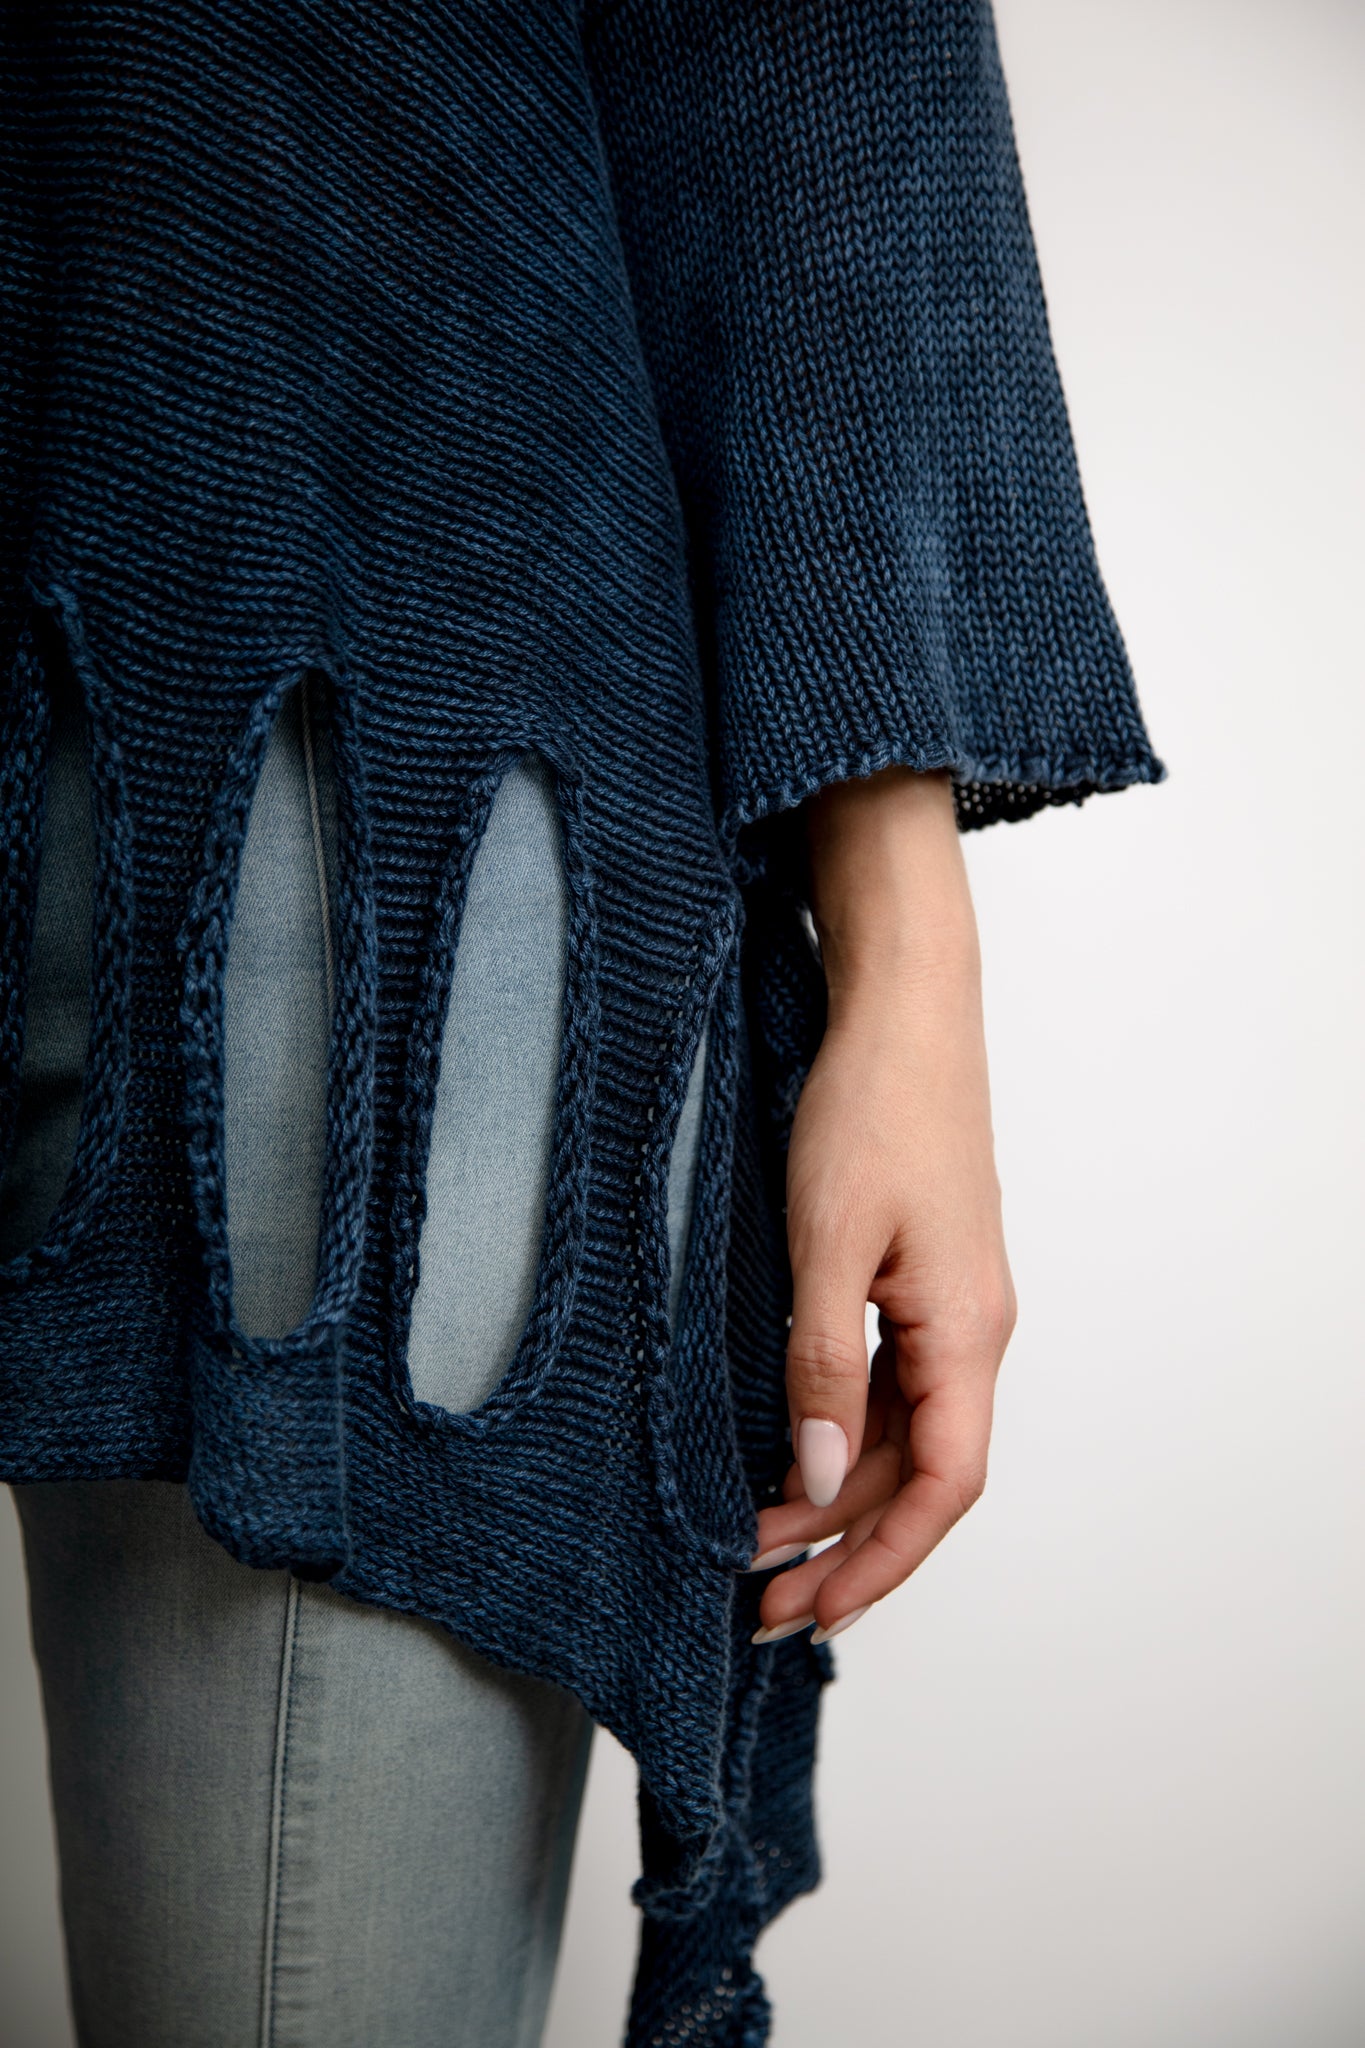 2657 Woman's Cotton Asymmetric Sweater